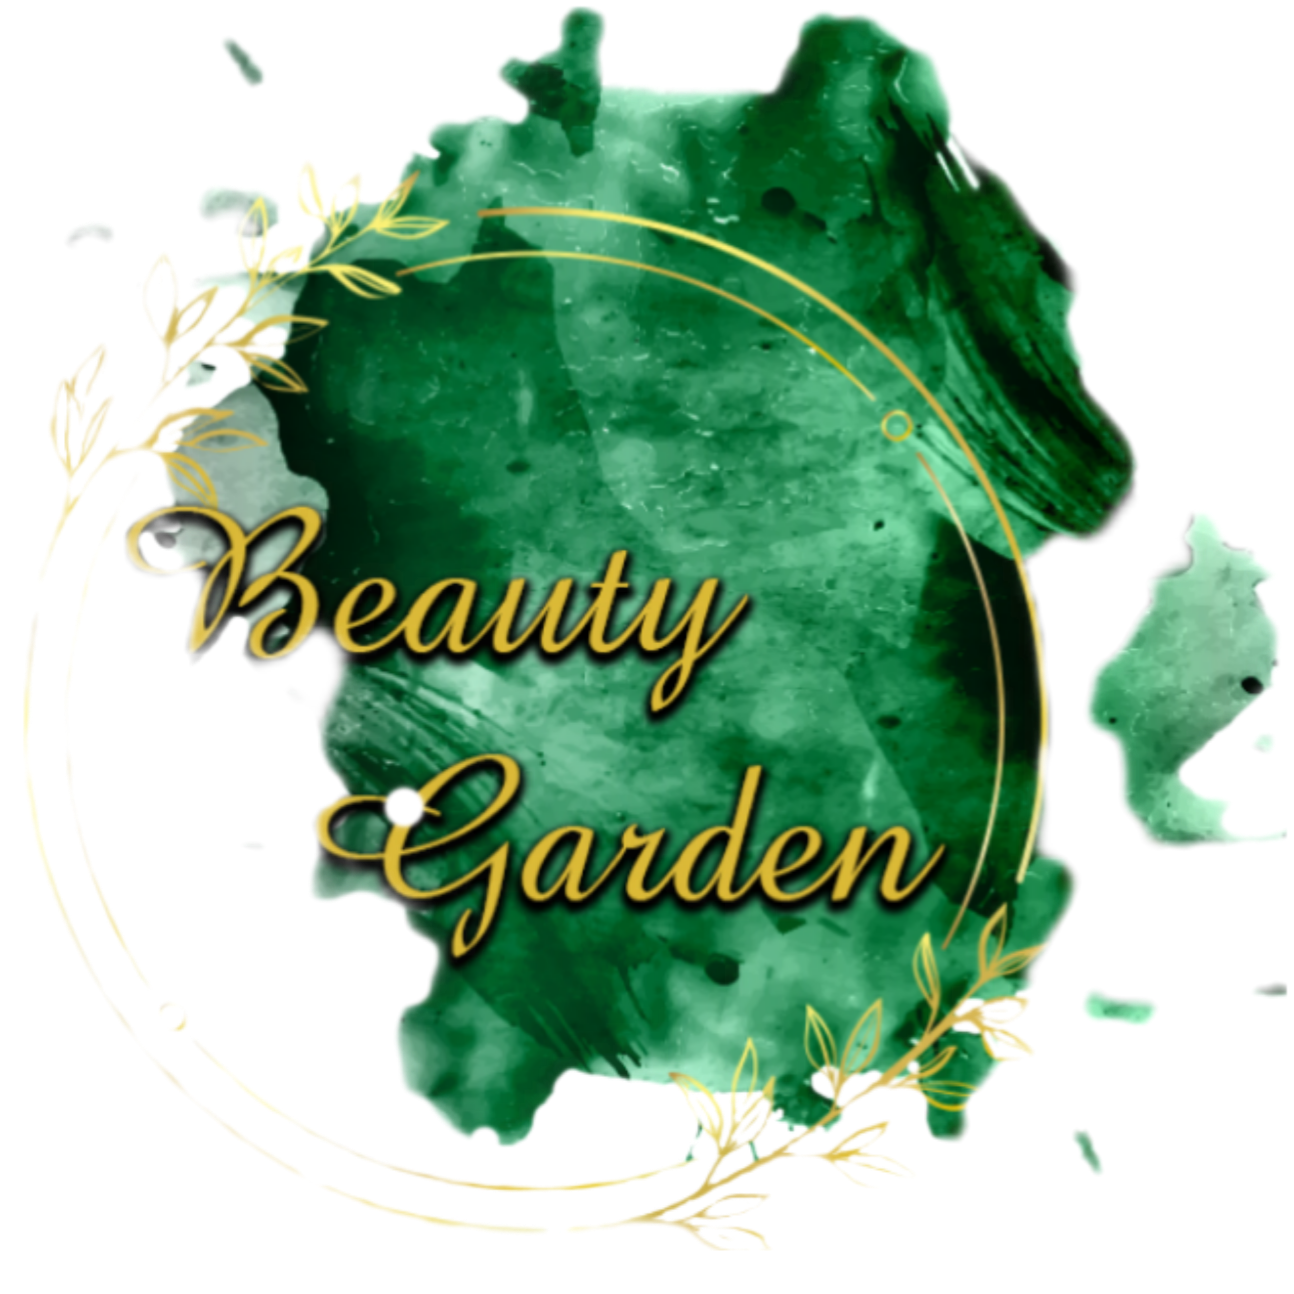 Beauty garden